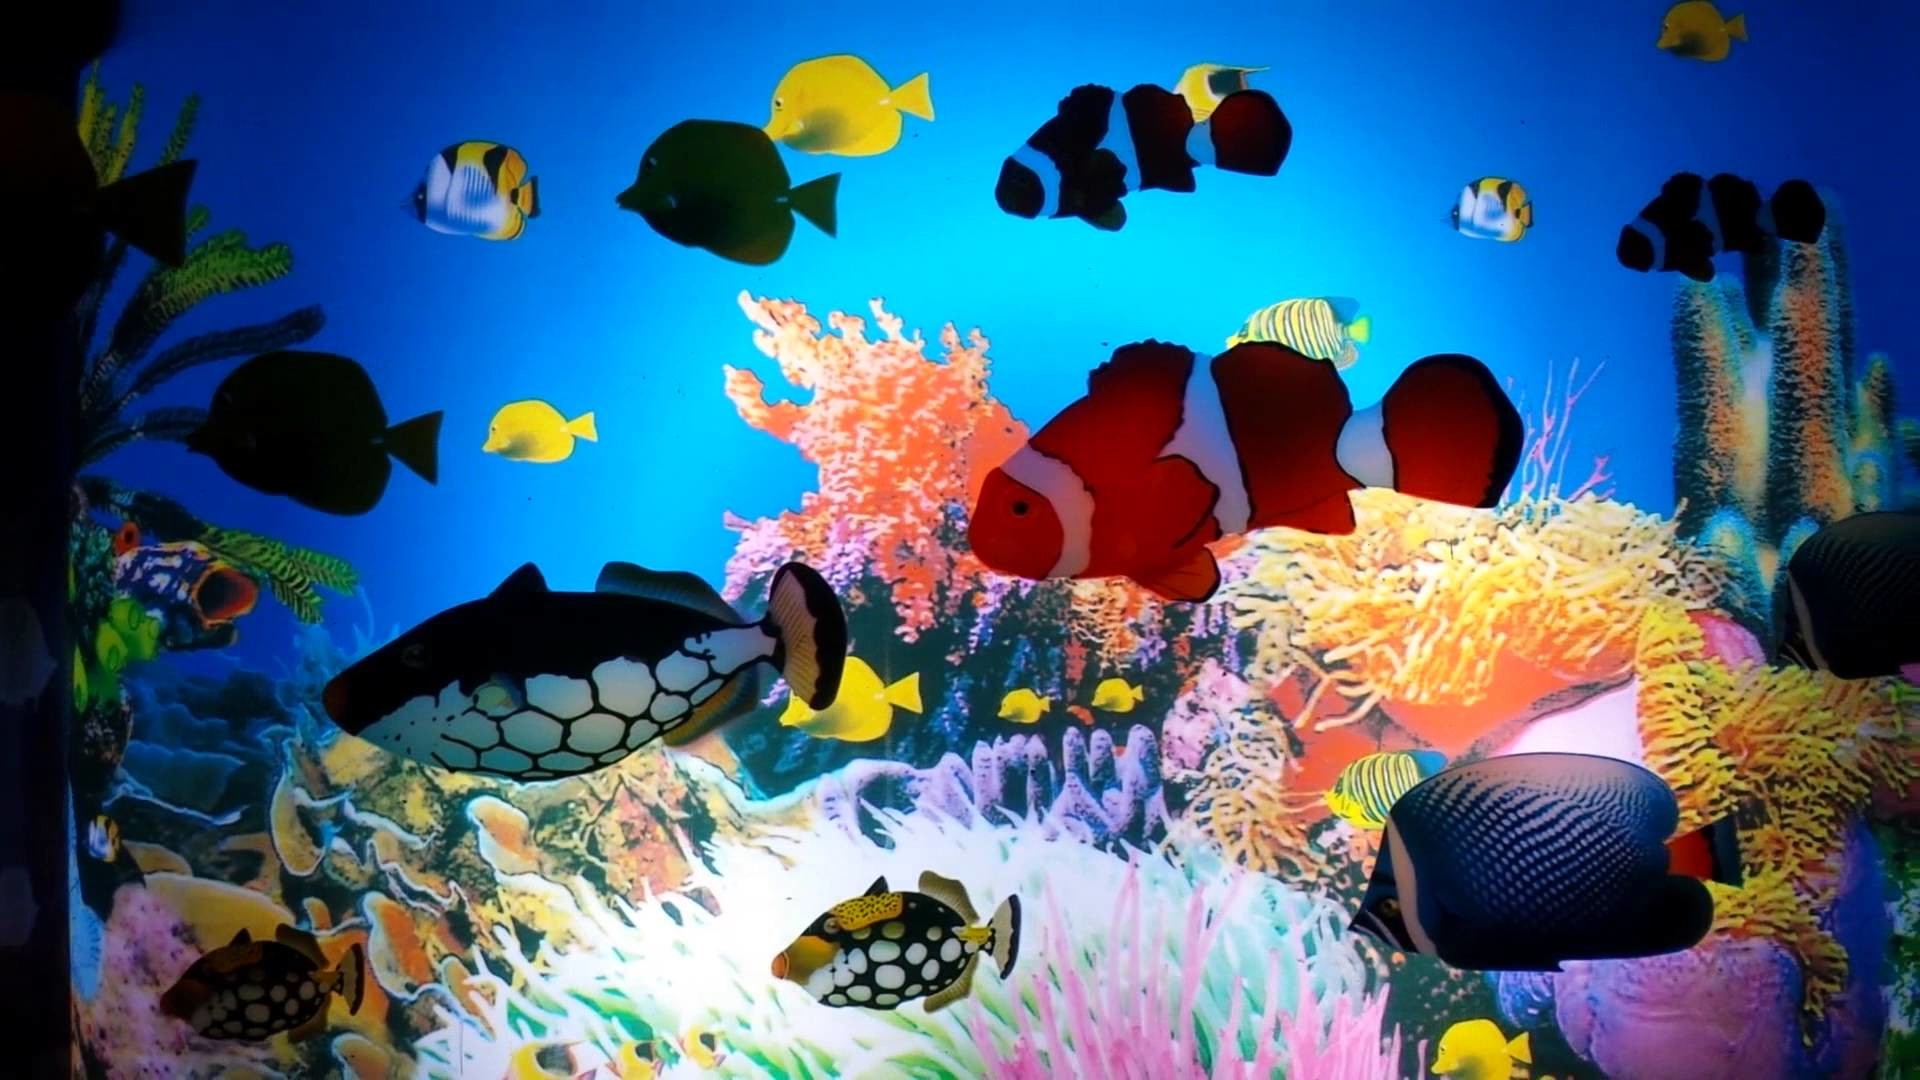 움직이는 수족관 벽지,해양 생물학,산호초,수중,산호초 물고기,암초